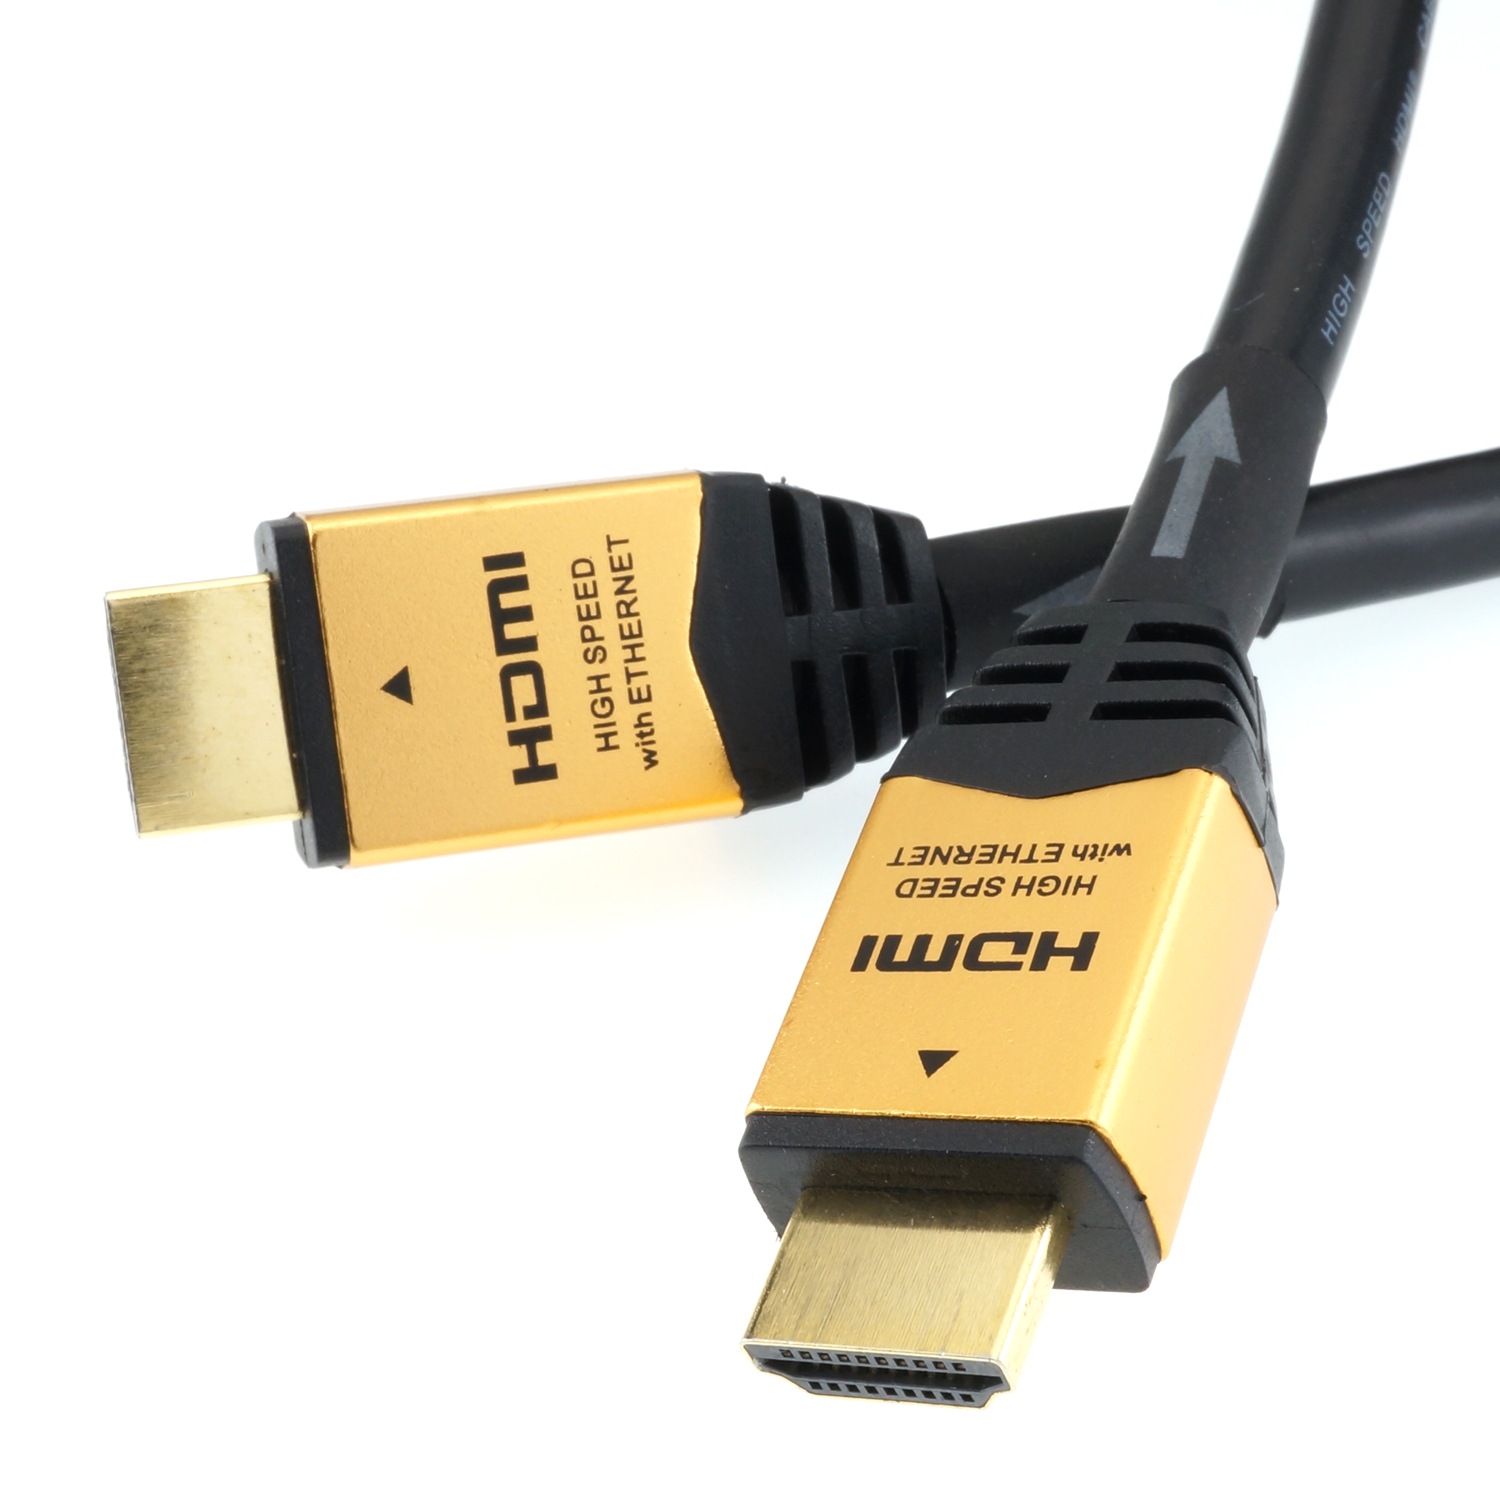 ホーリックダイレクト / HDMIケーブル イコライザー内蔵型 HDM150-592GD